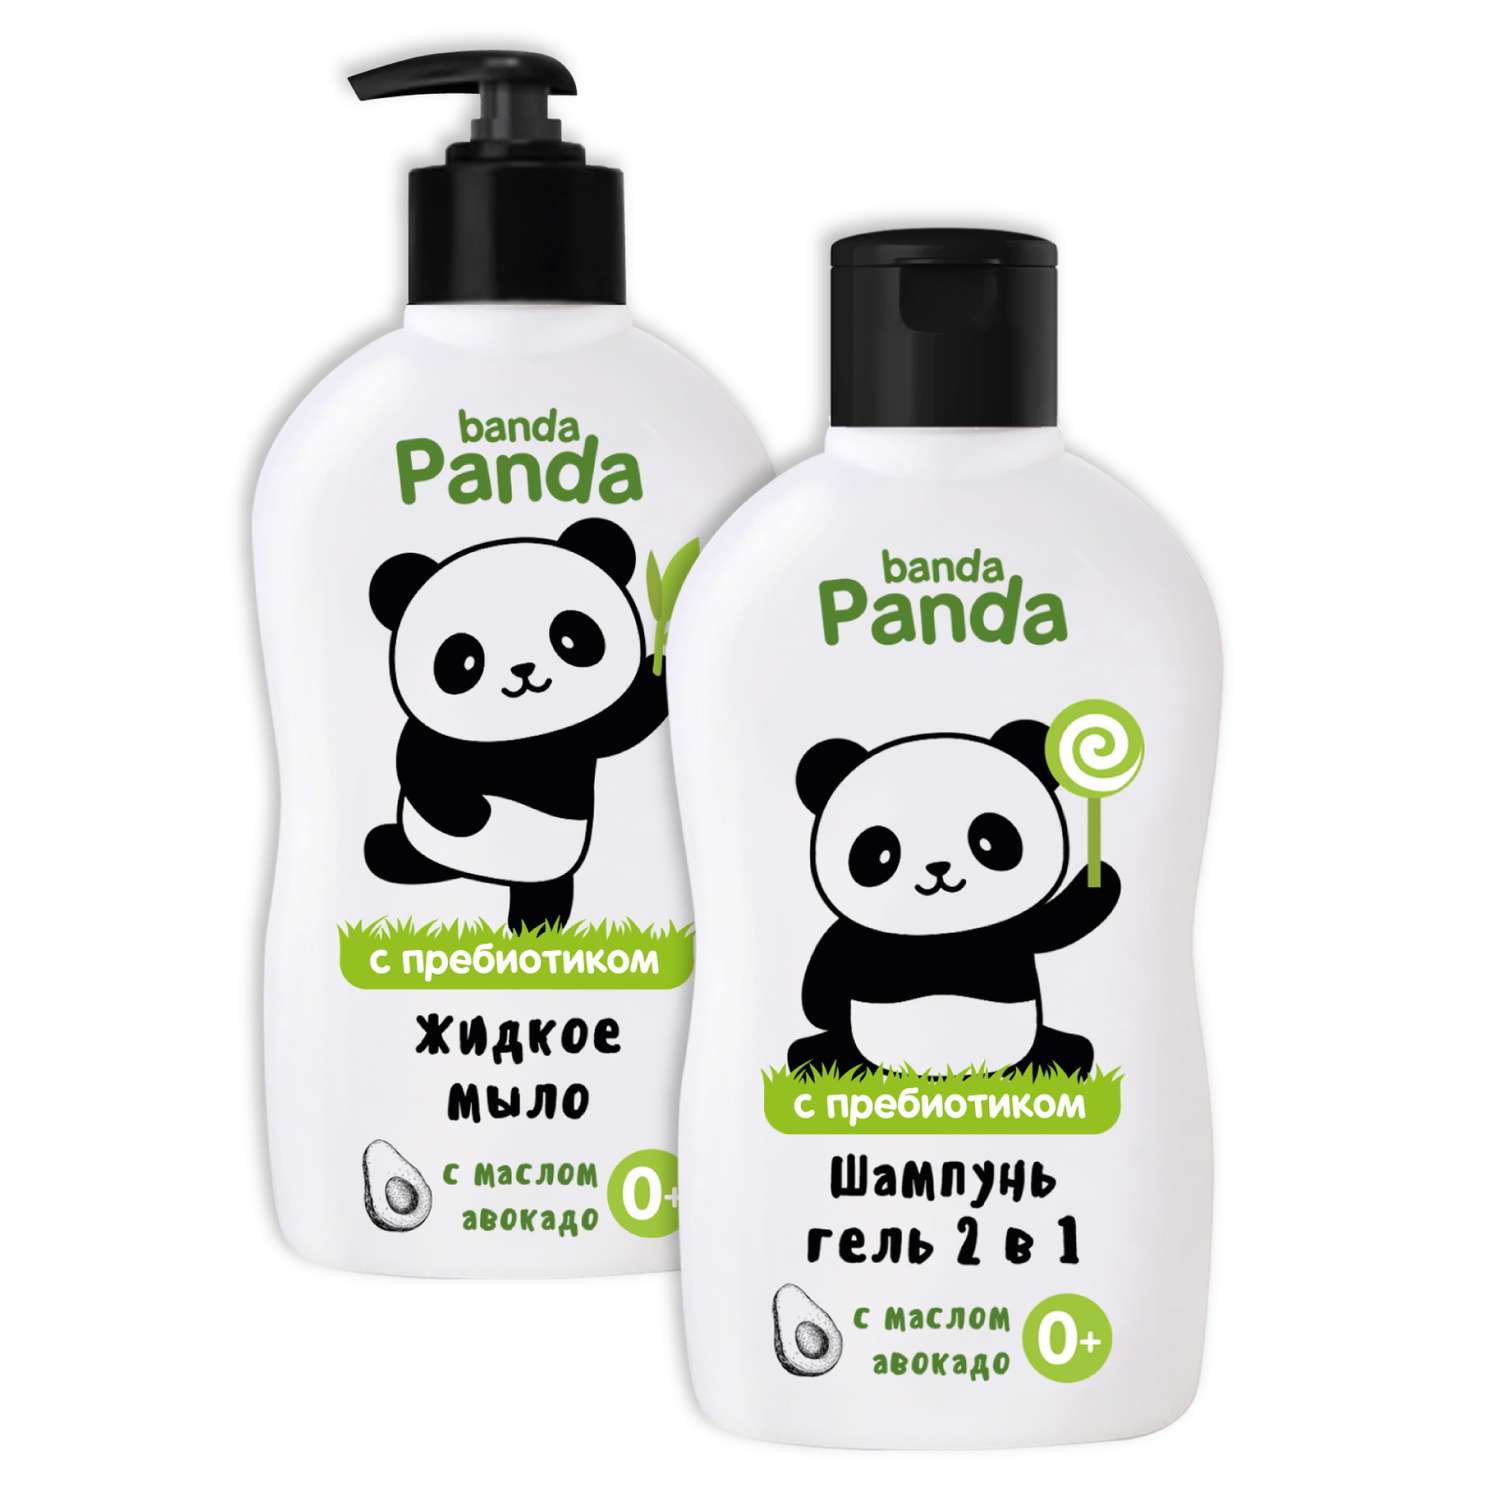 Жидкое мыло и Шампунь-гель 2в1 banda Panda 2шт по 250мл с пребиотиком - фото 2